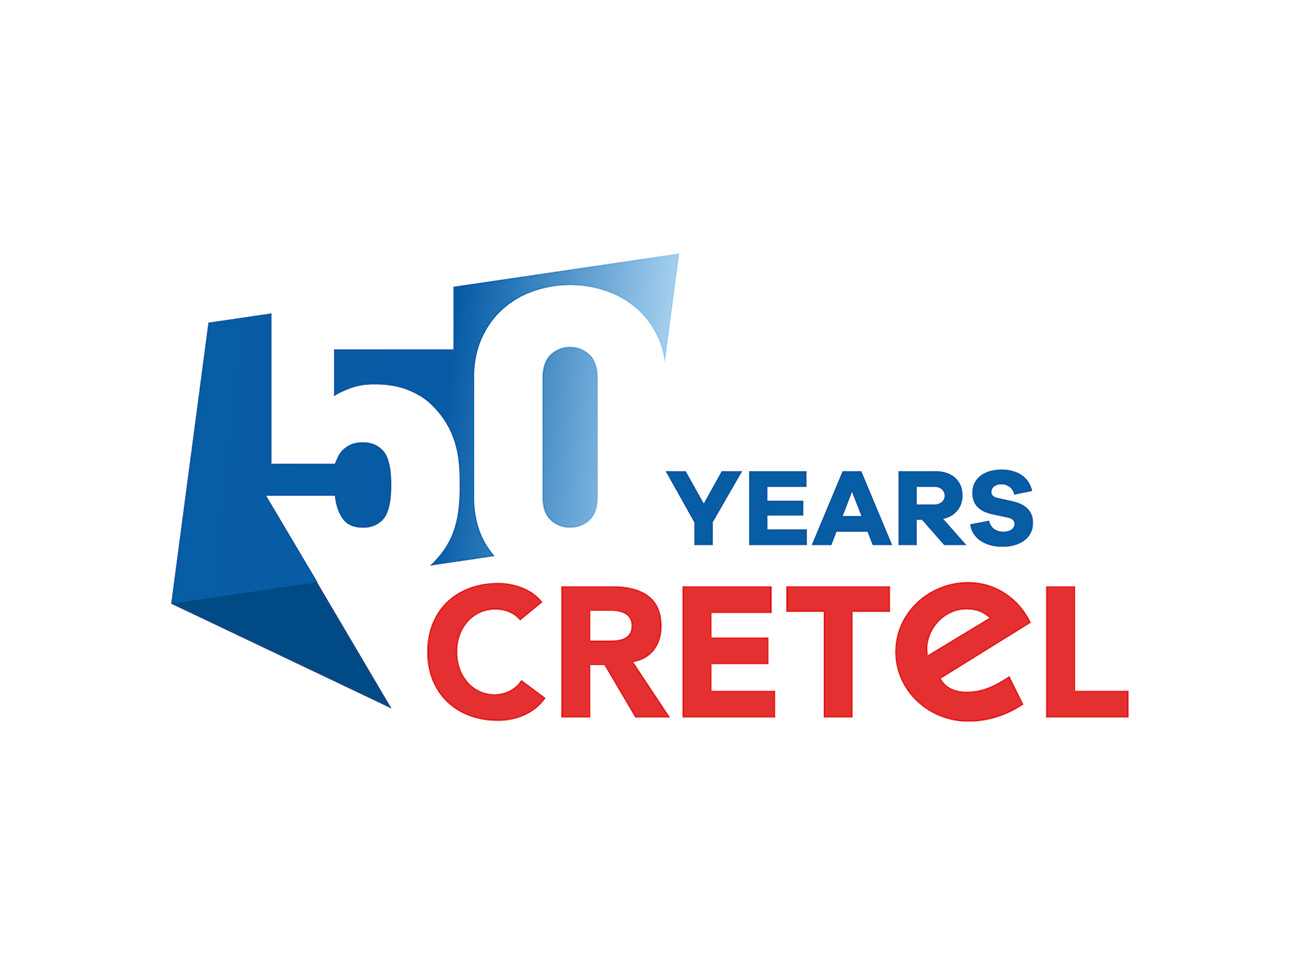 Cretel_50years_logo